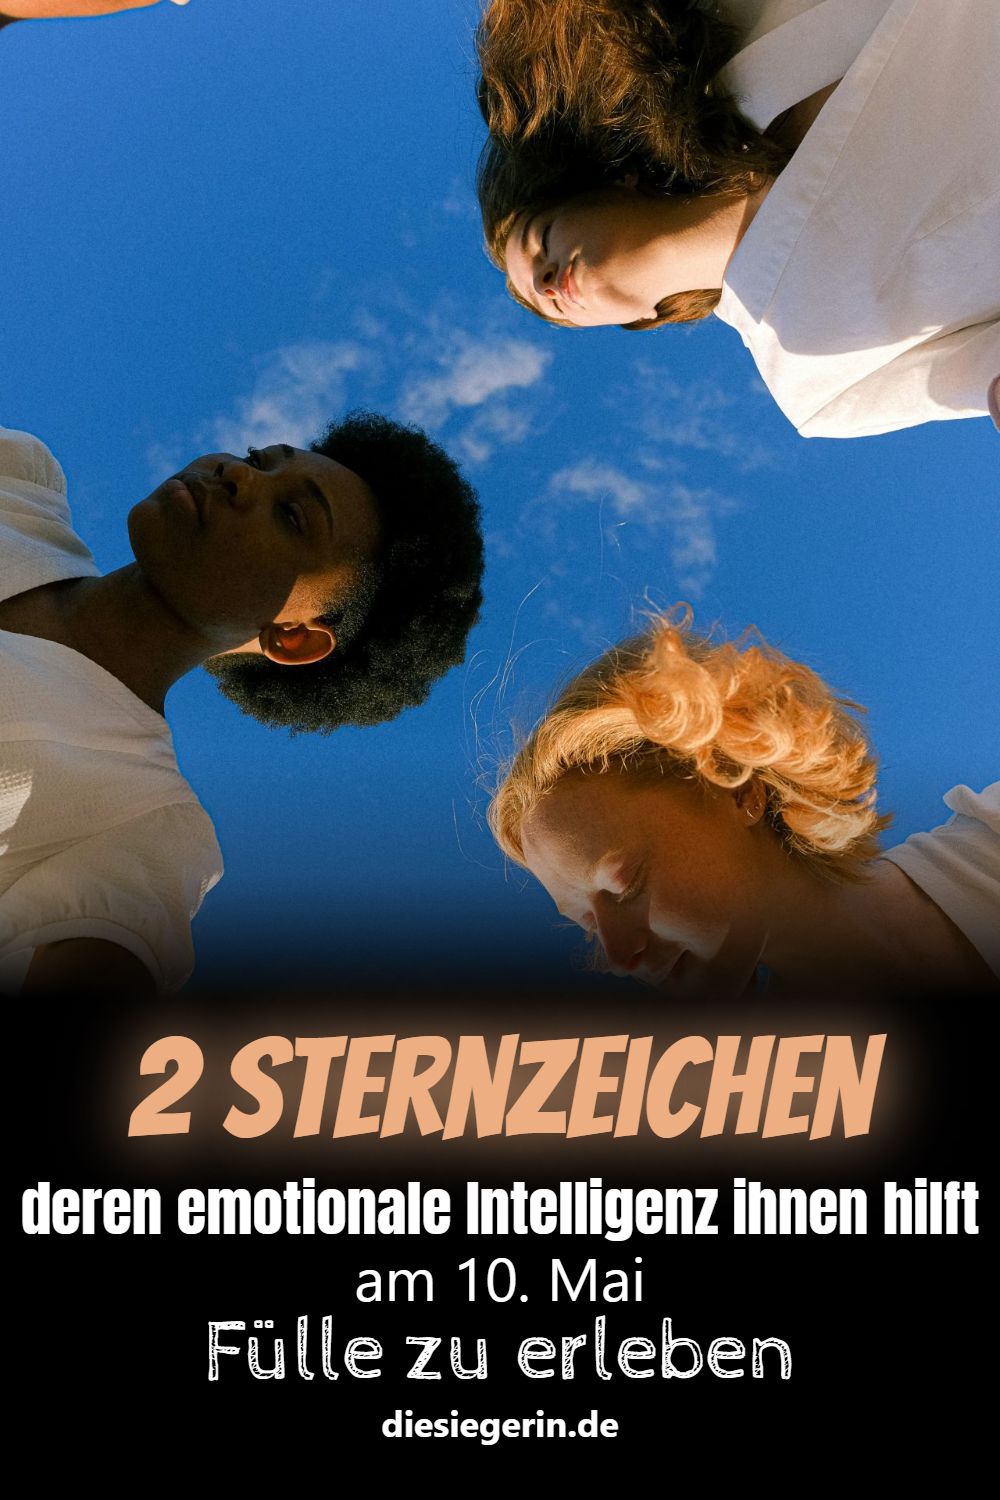 2 Sternzeichen deren emotionale Intelligenz ihnen hilft am 10. Mai Fülle zu erleben